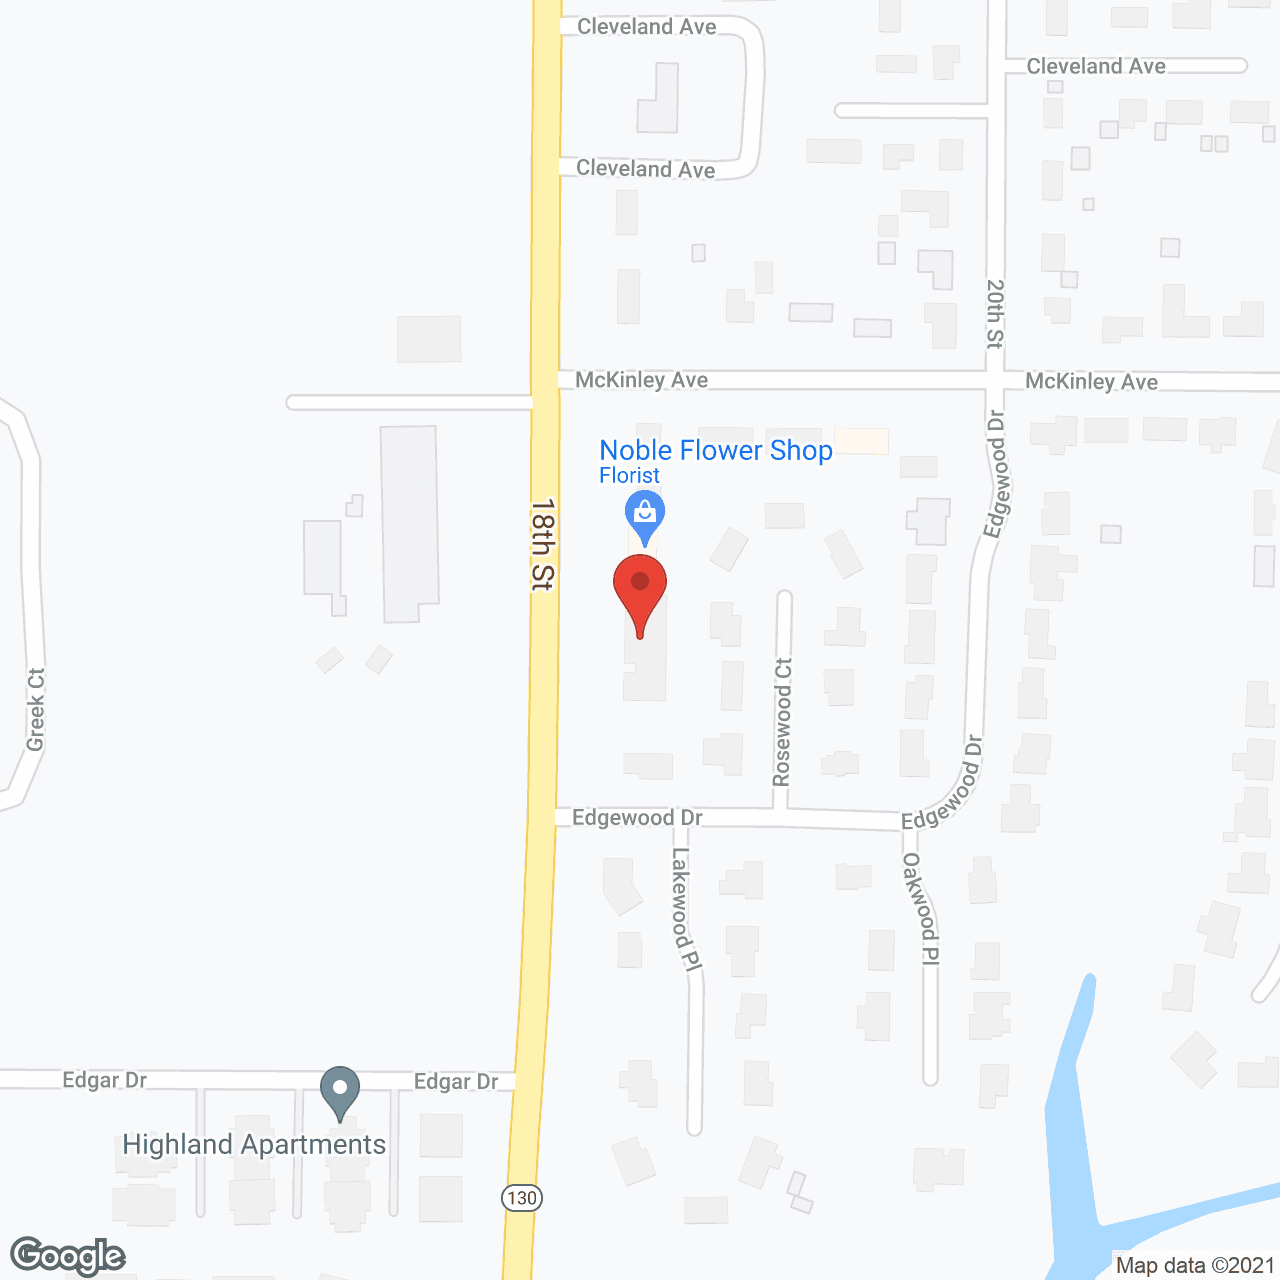 Lakewood Village in google map